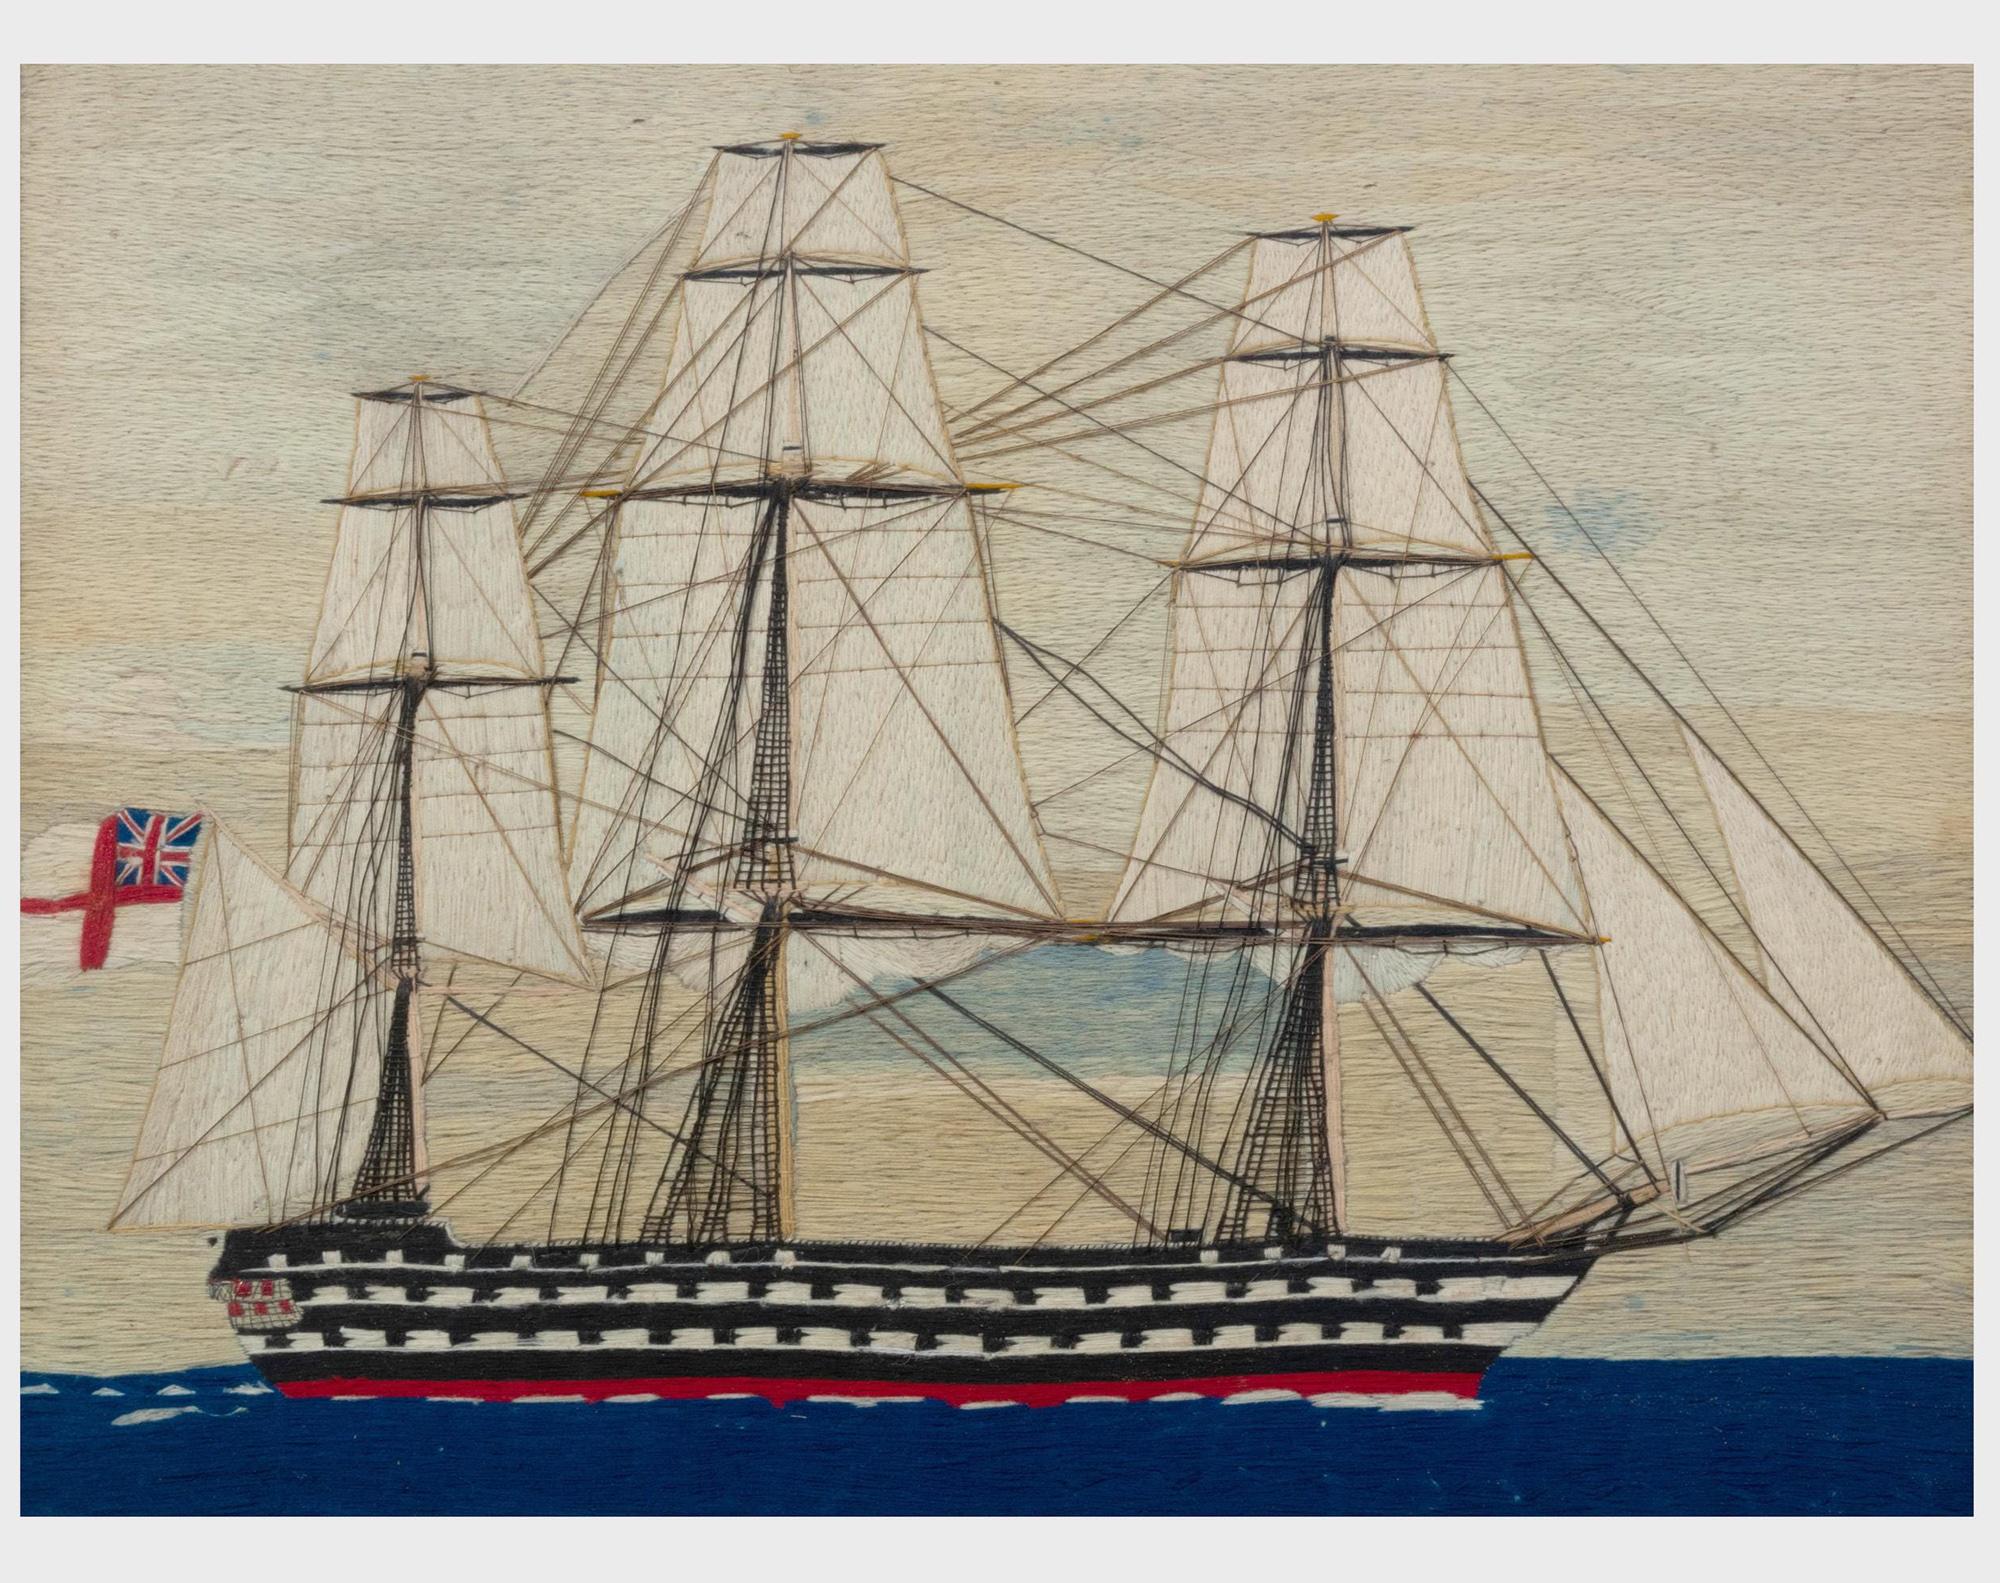 Travail de laine d'un marin anglais sur un cuirassé,
Vers 1865-75.

Le lainage du marin représente une vue à tribord d'un cuirassé de second rang arborant le drapeau blanc sous voiles.  Des paquets de mer blancs se brisent contre la coque alors